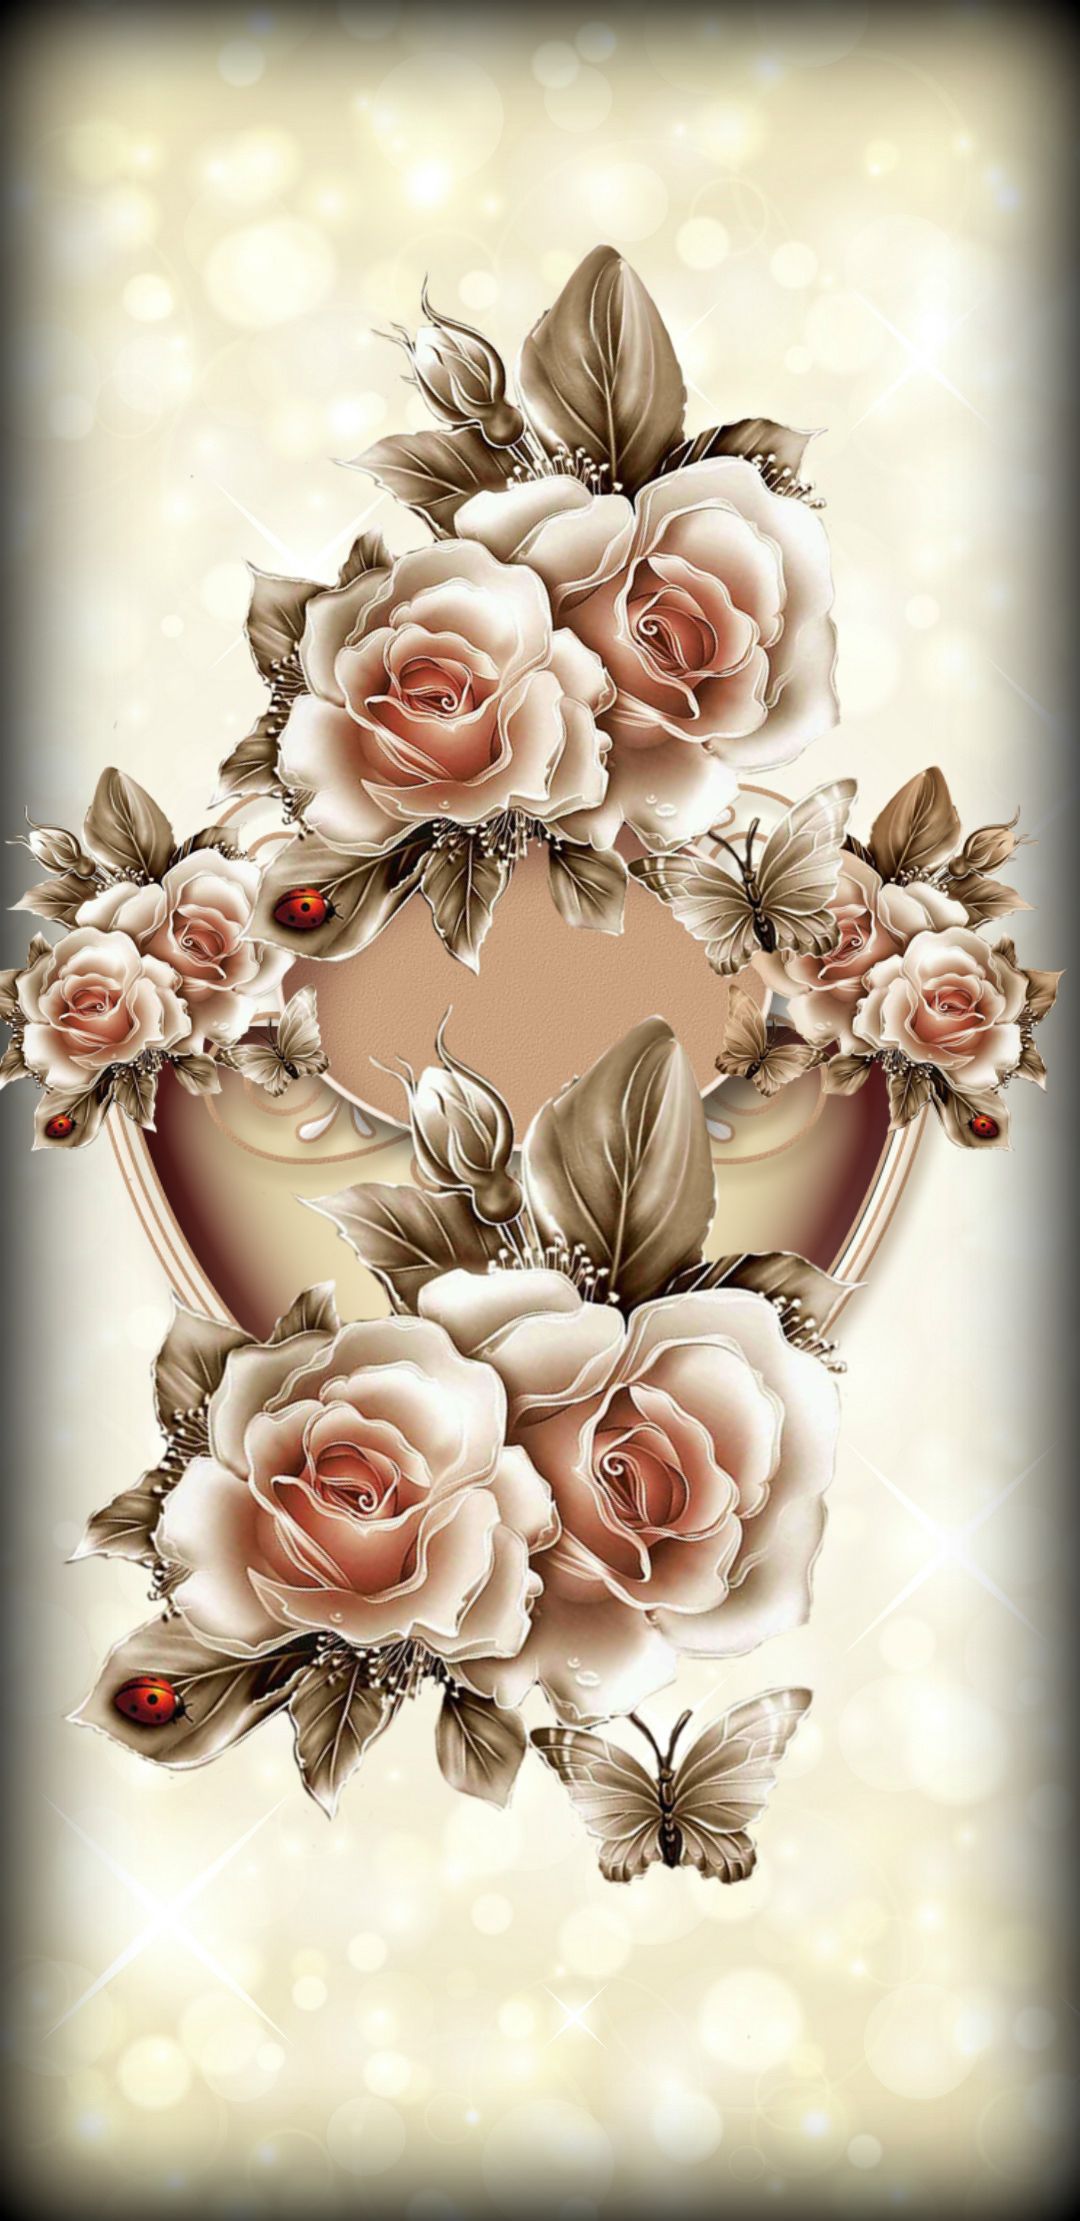 Roses So Romantic. Flower phone wallpaper, Rose flower wallpaper, Flower art